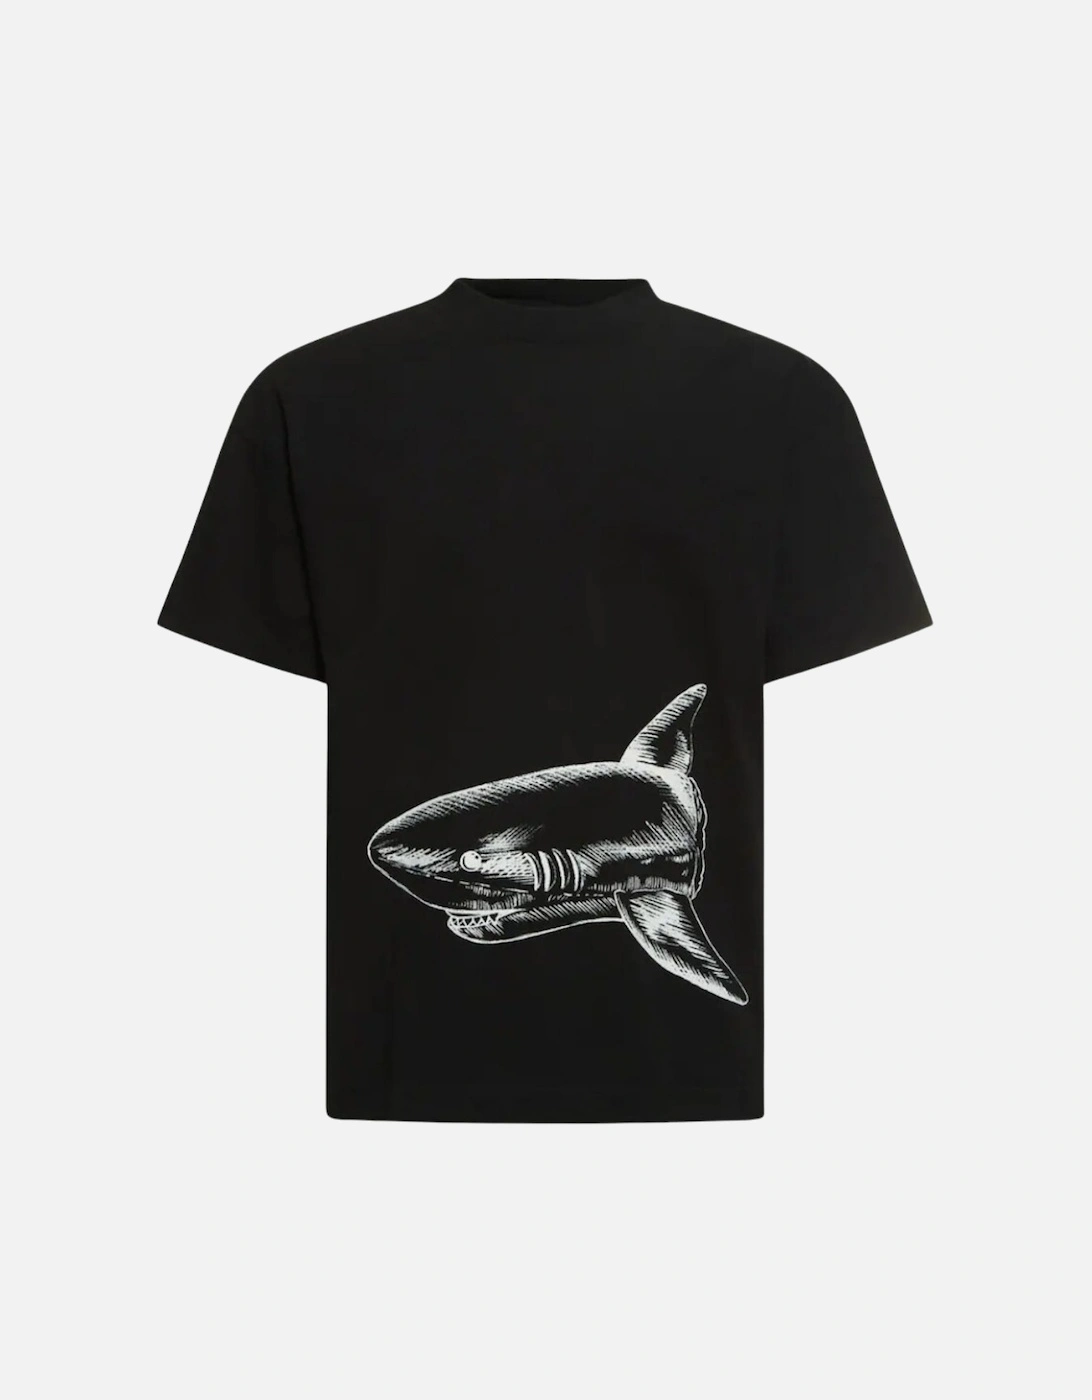 Broken Shark Design Black T-Shirt, 3 of 2